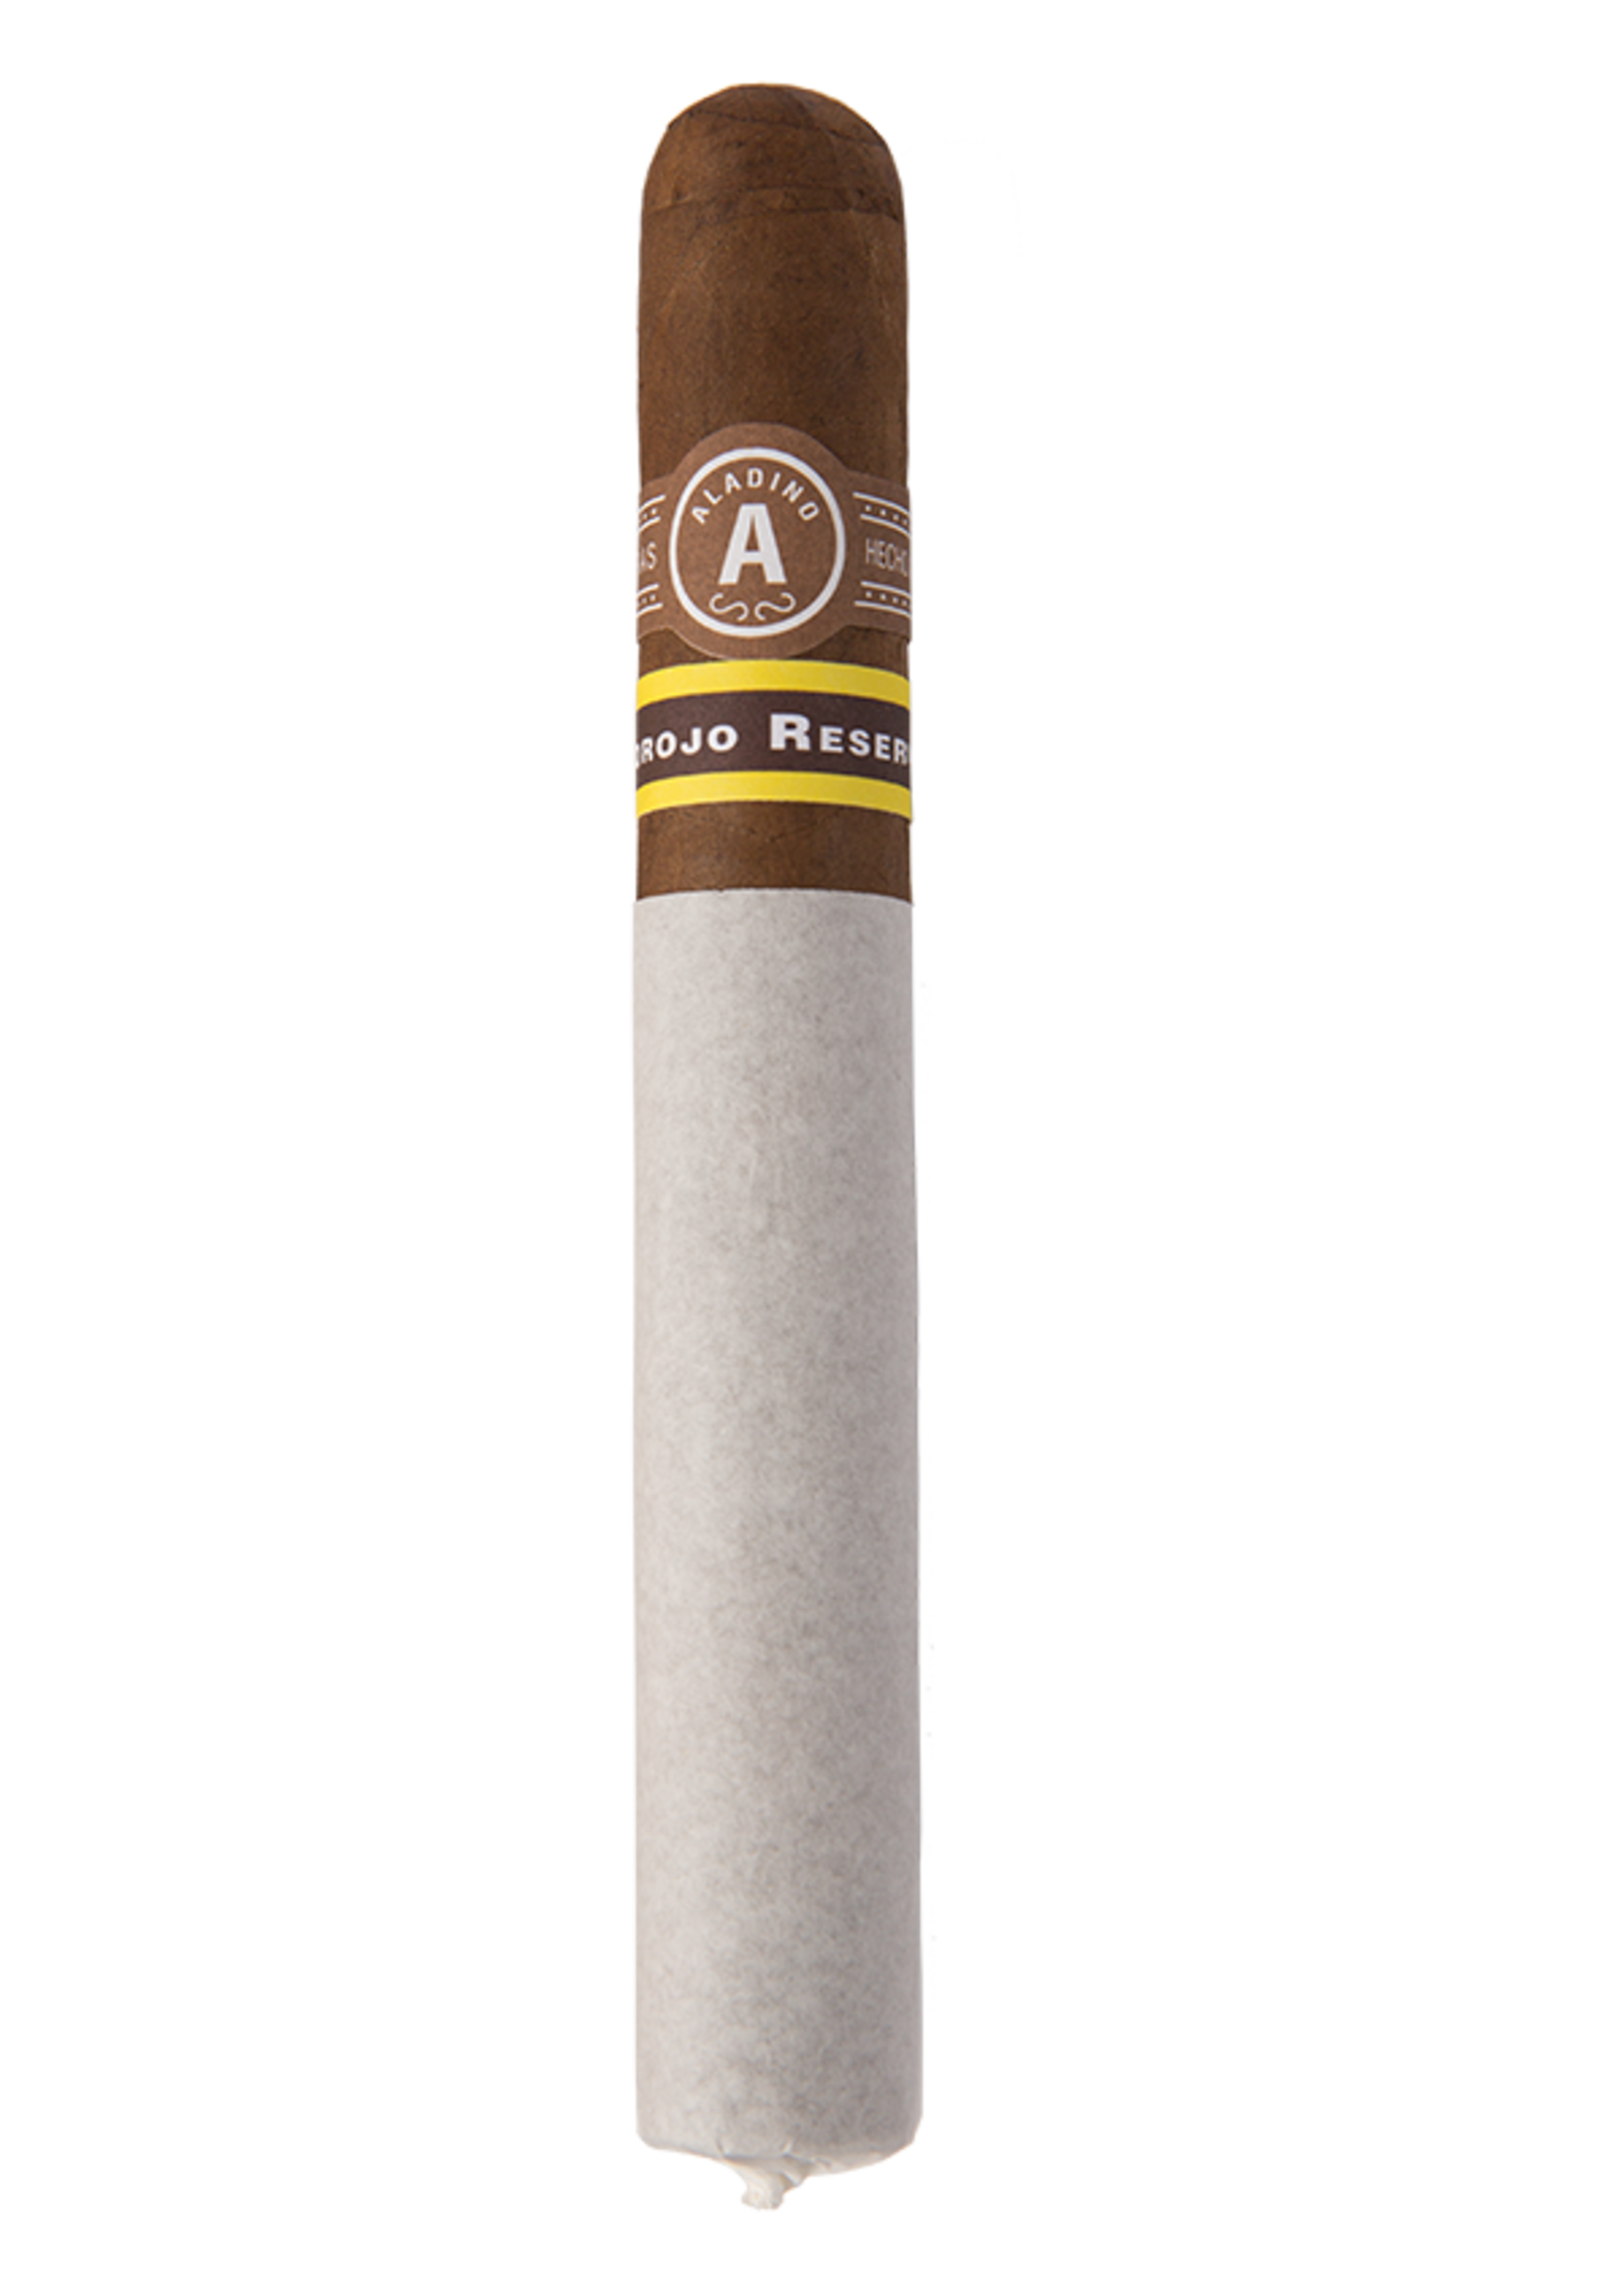 JRE Tobacco Co. Aladino Corojo Reserva - Box Pressed - Figurado